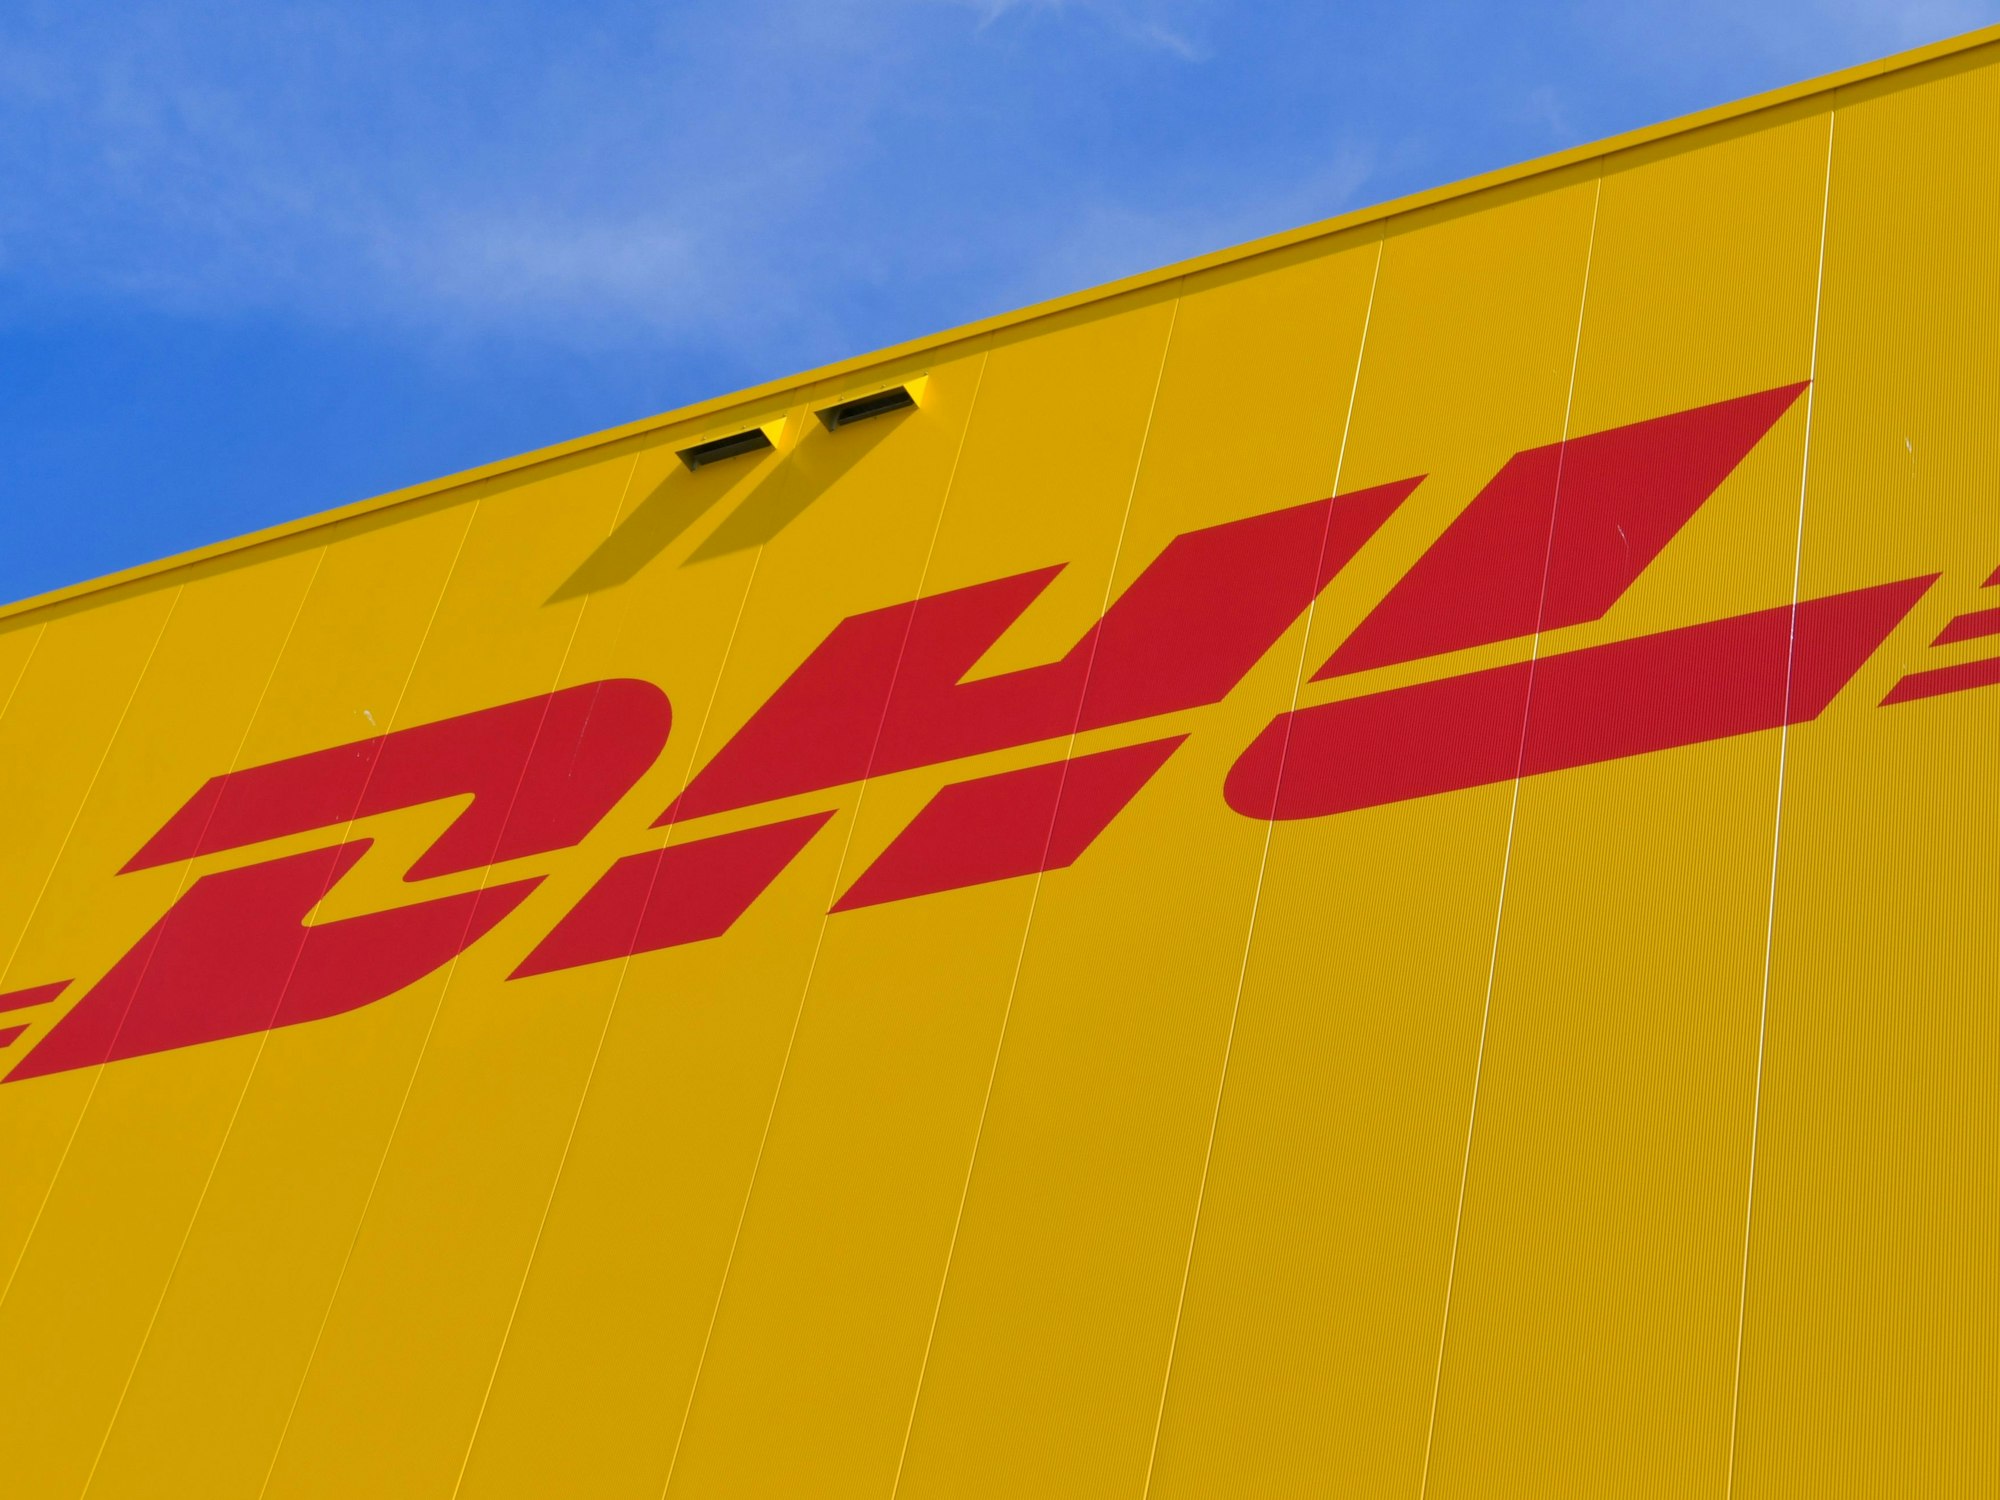 Das Logo des Paketdienstes DHL der Deutschen Post auf der Fassade eines Paketzentrums im Juni 2020 in Ludwigsfelde.